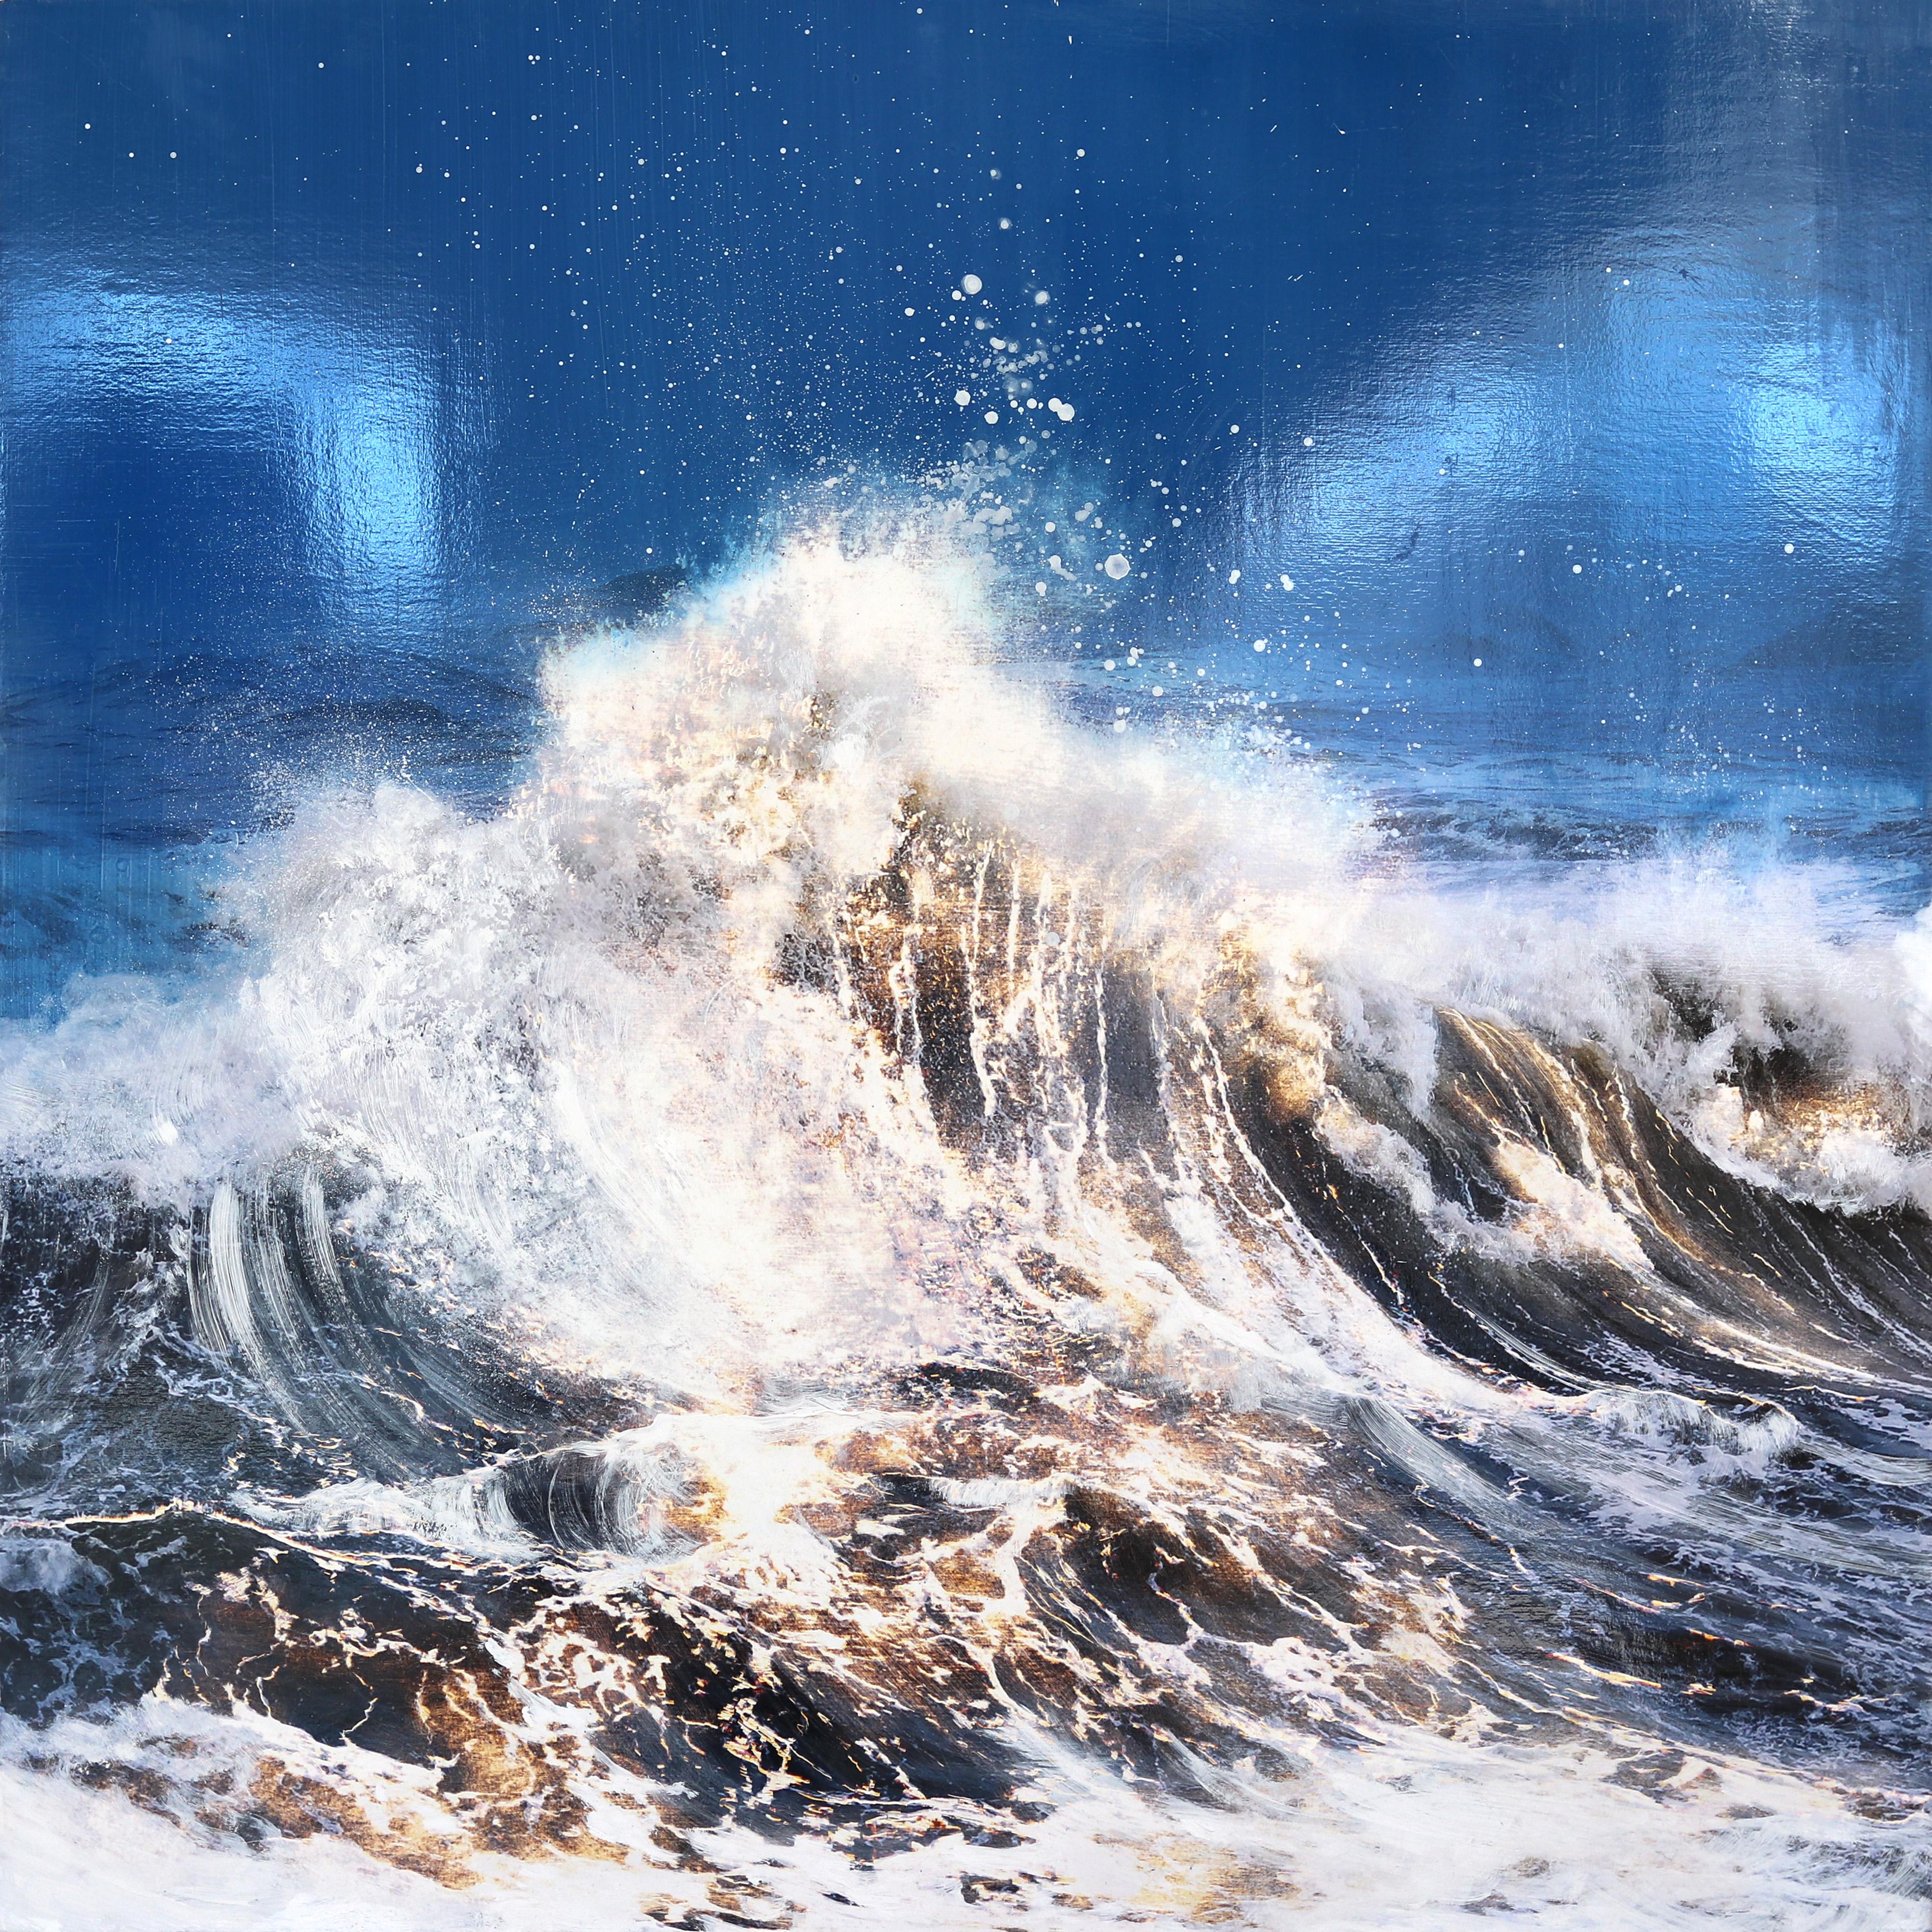 Untamed - Des vagues océaniques puissantes